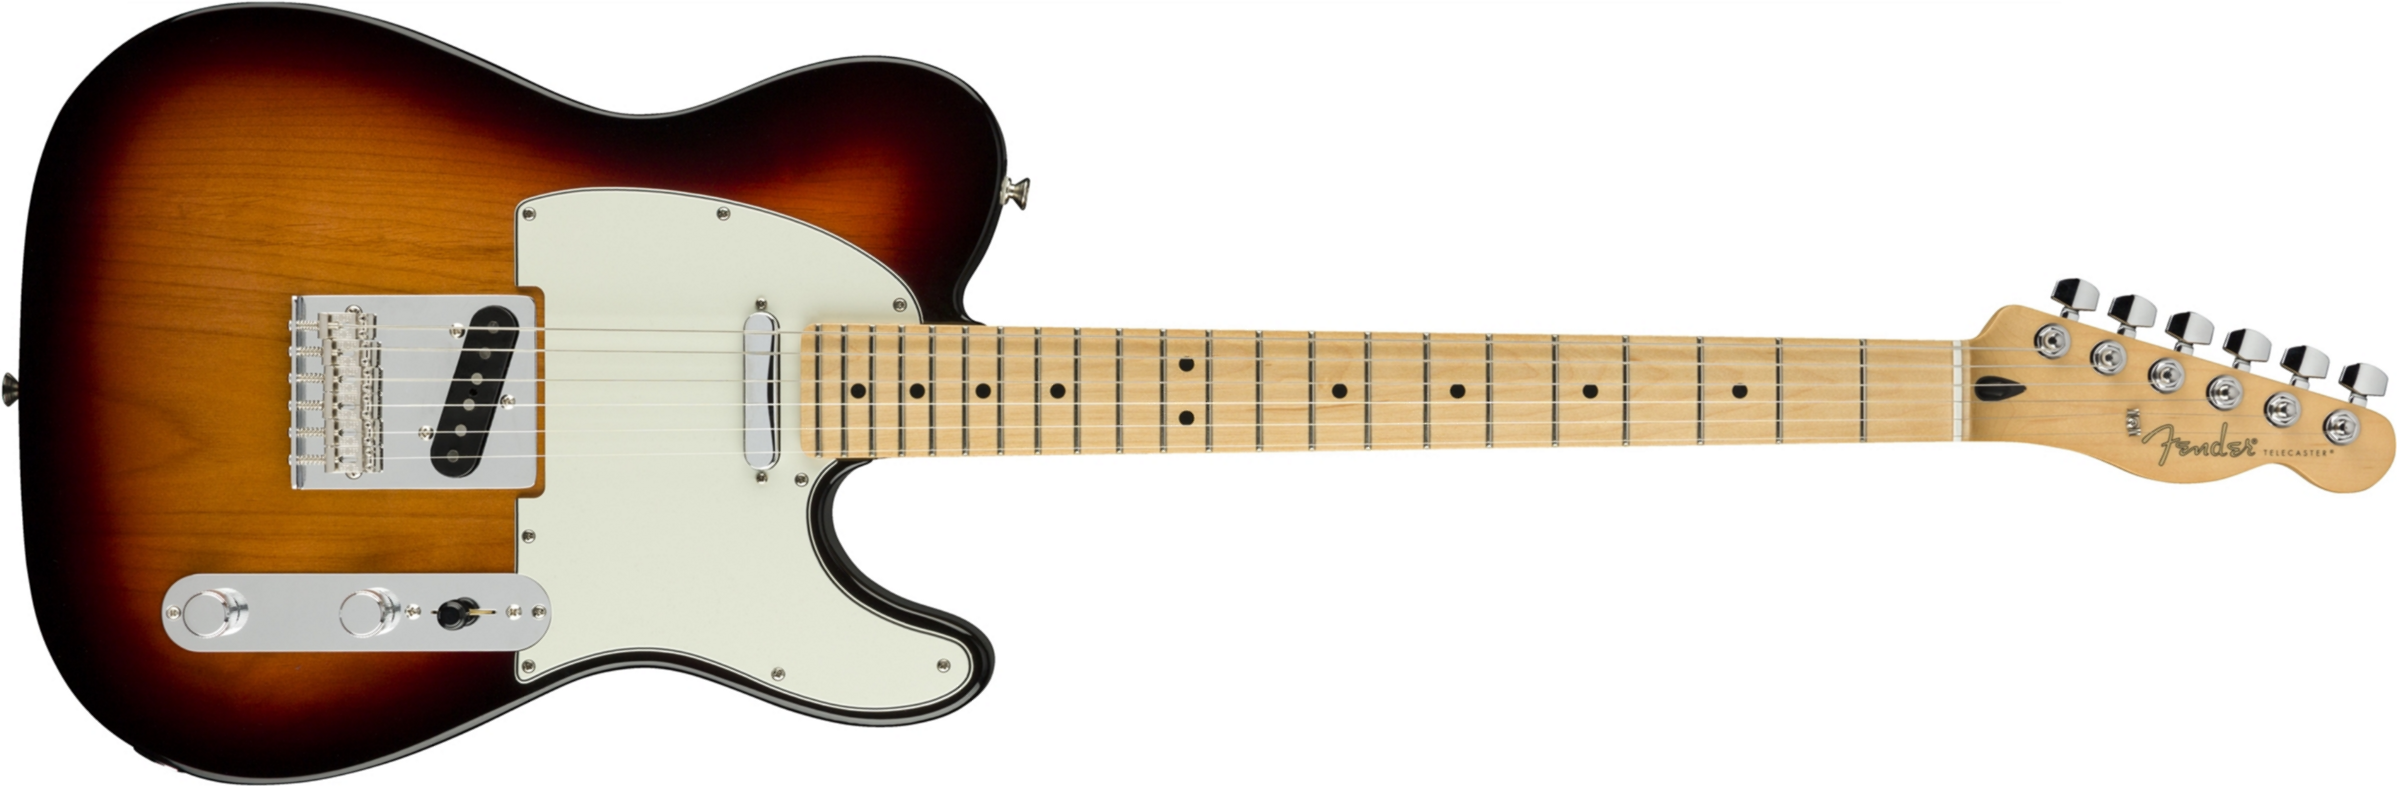 Fender Tele Player Mex Mn - 3-color Sunburst - Tel shape electric guitar - Main picture